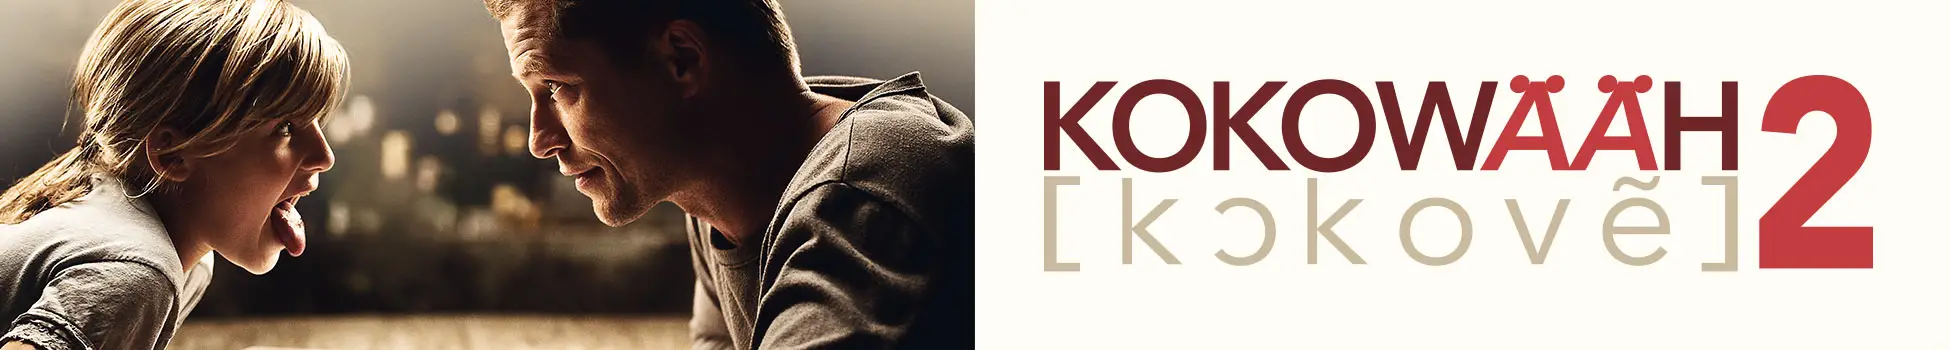 Kokowääh 2 - Artwork - Key Visual - Header